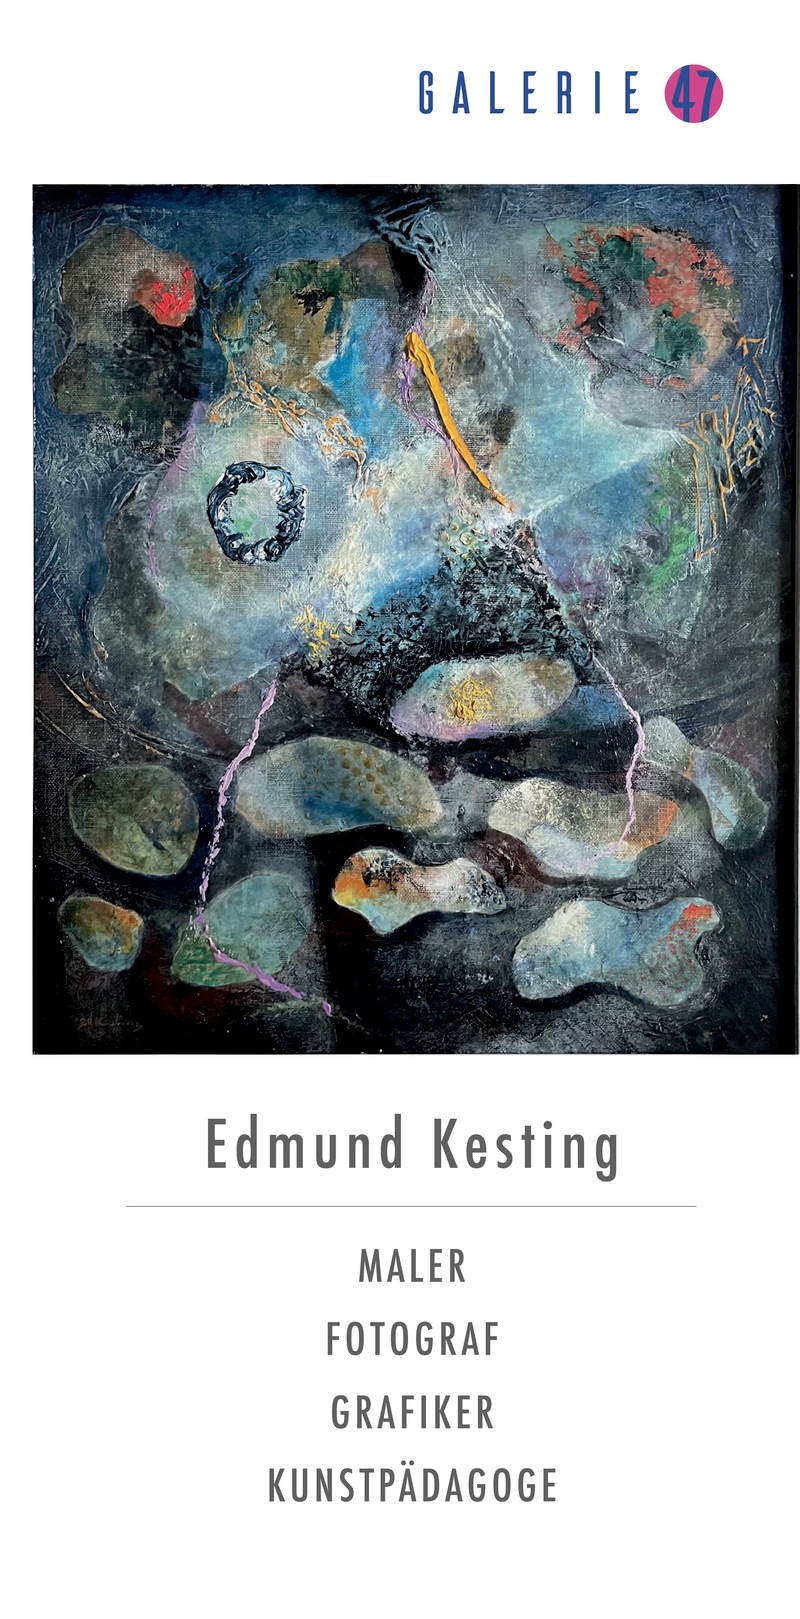 Edmund Kesting: Vielseitige Werke eines Avantgarde-Künstlers, Hohen Neuendorf